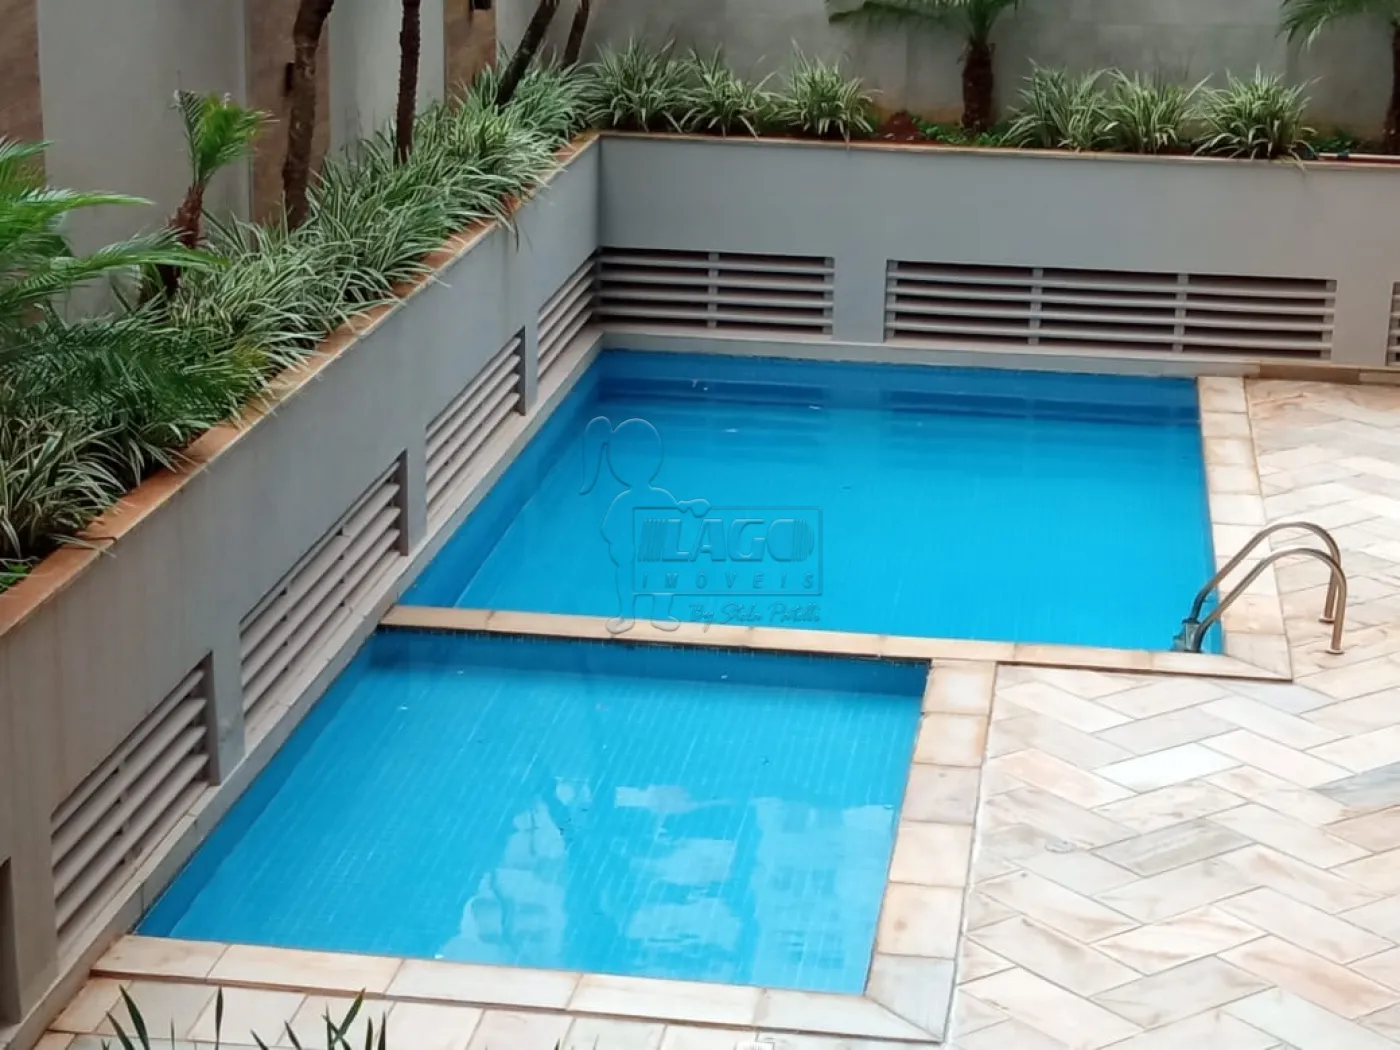 Alugar Apartamentos / Padrão em Ribeirão Preto R$ 6.000,00 - Foto 27